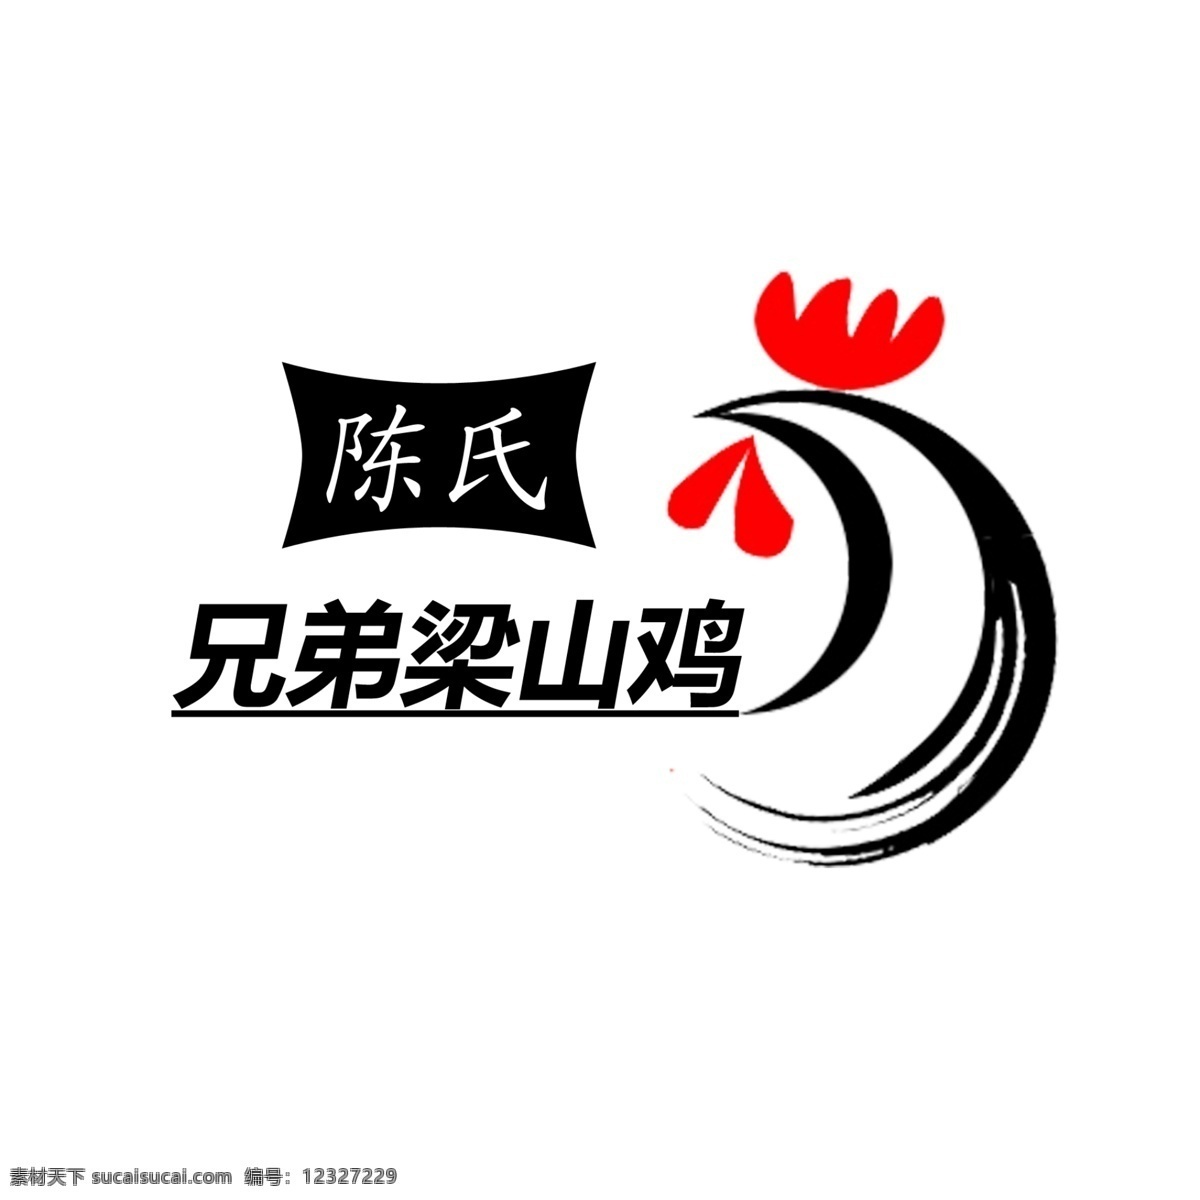 兄弟梁山鸡 鸡 logo 兄弟鸡 陈氏鸡 企业 标志 标志图标